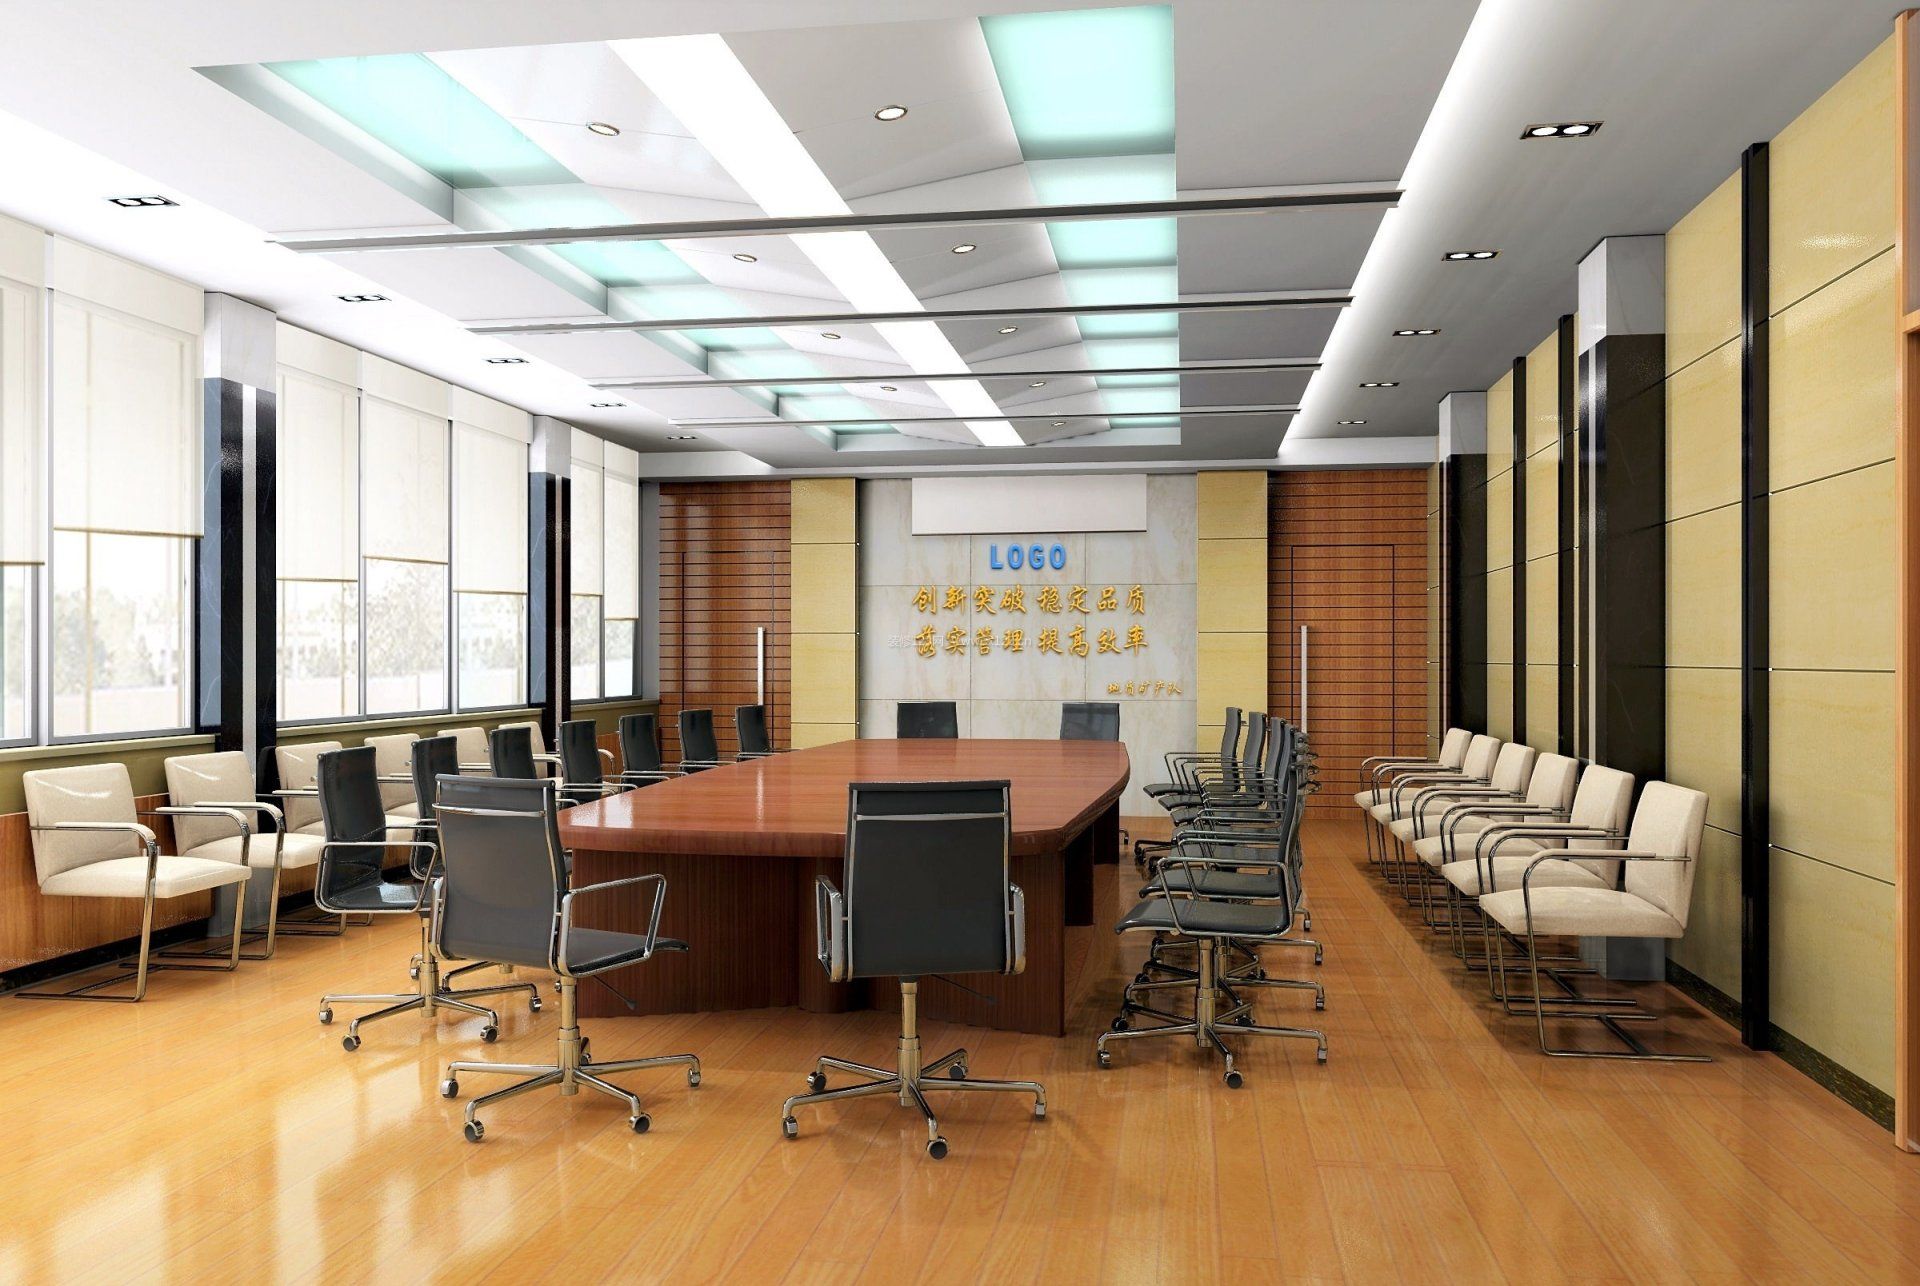 现代公司会议室布置效果图图片